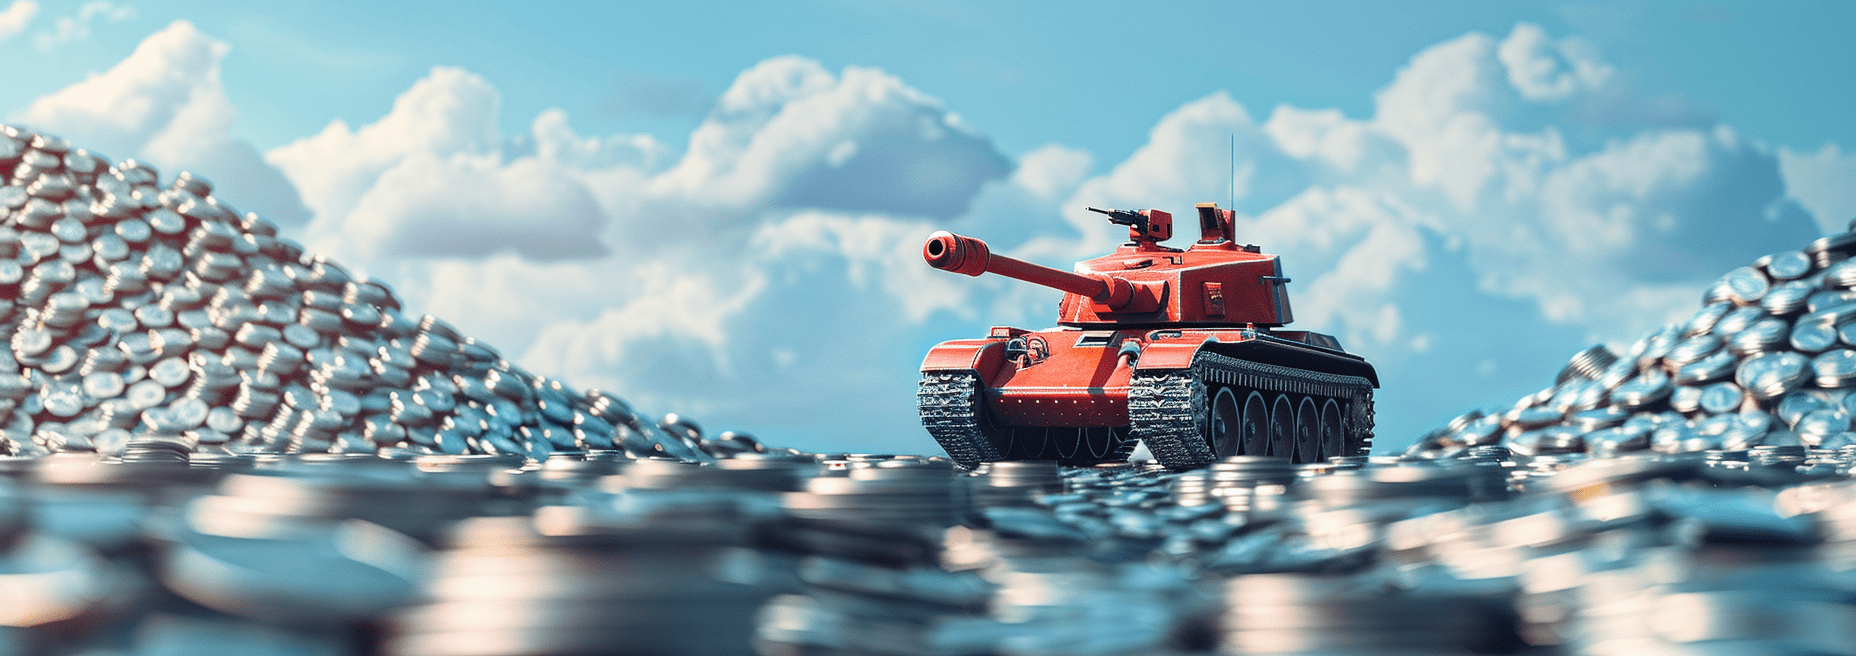 Серебро World of Tanks: Blitz